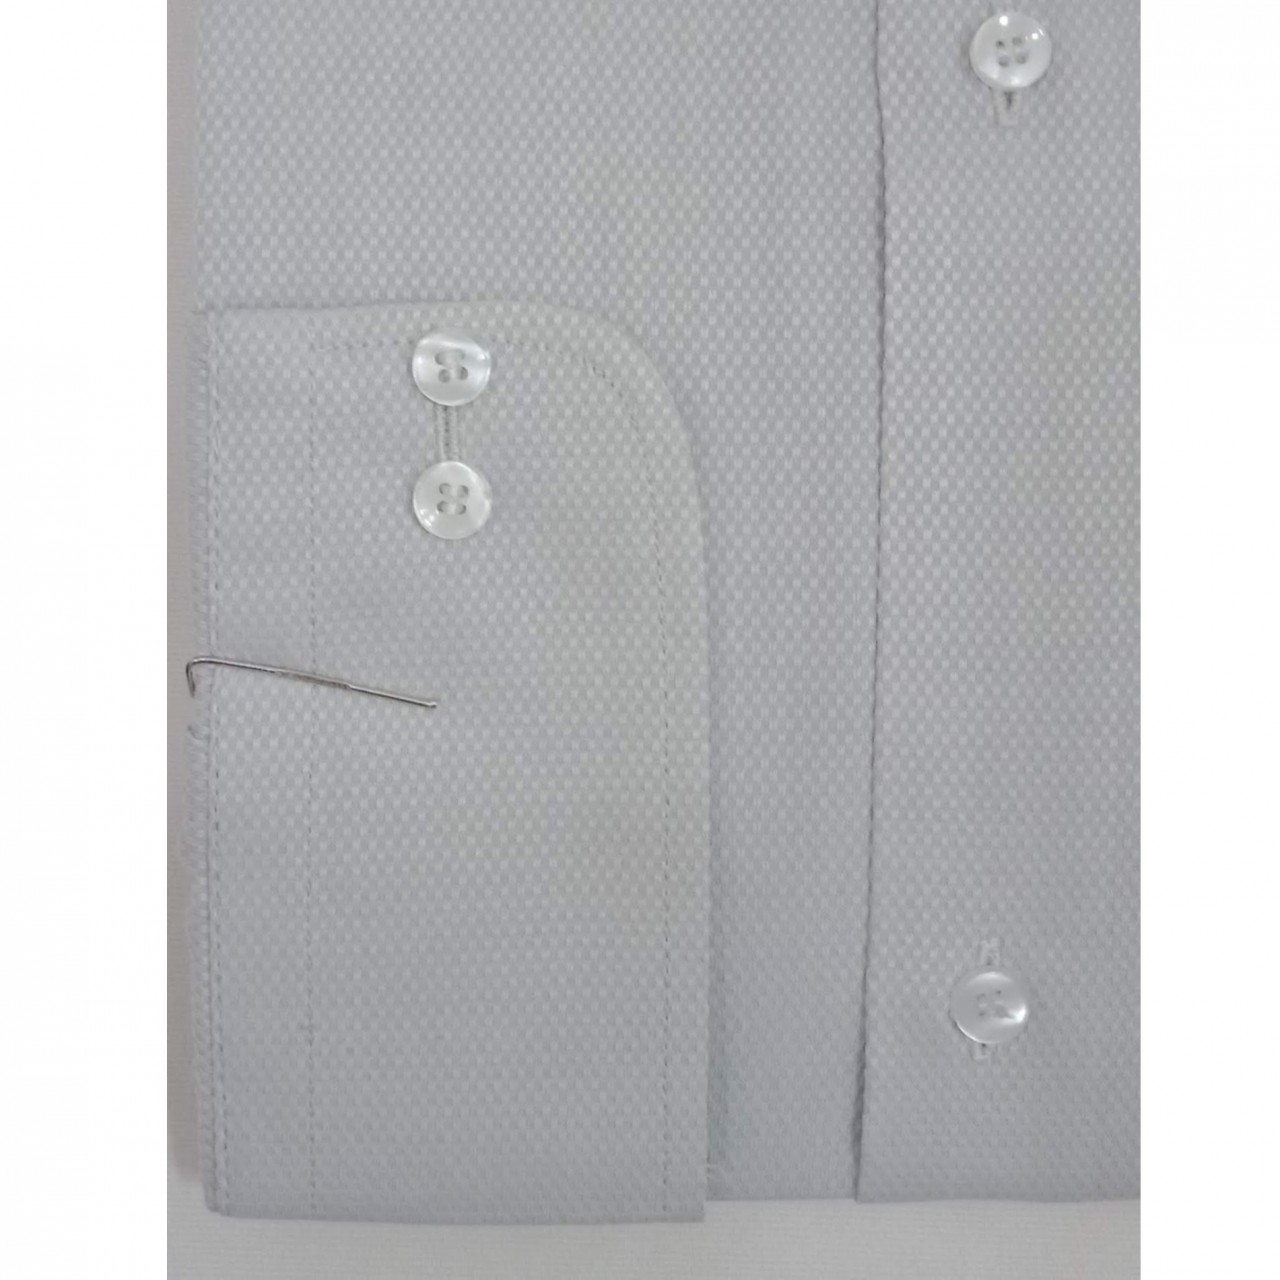 Ultra Finest Self Design Texture Formal Shirt For Men - Light Grey